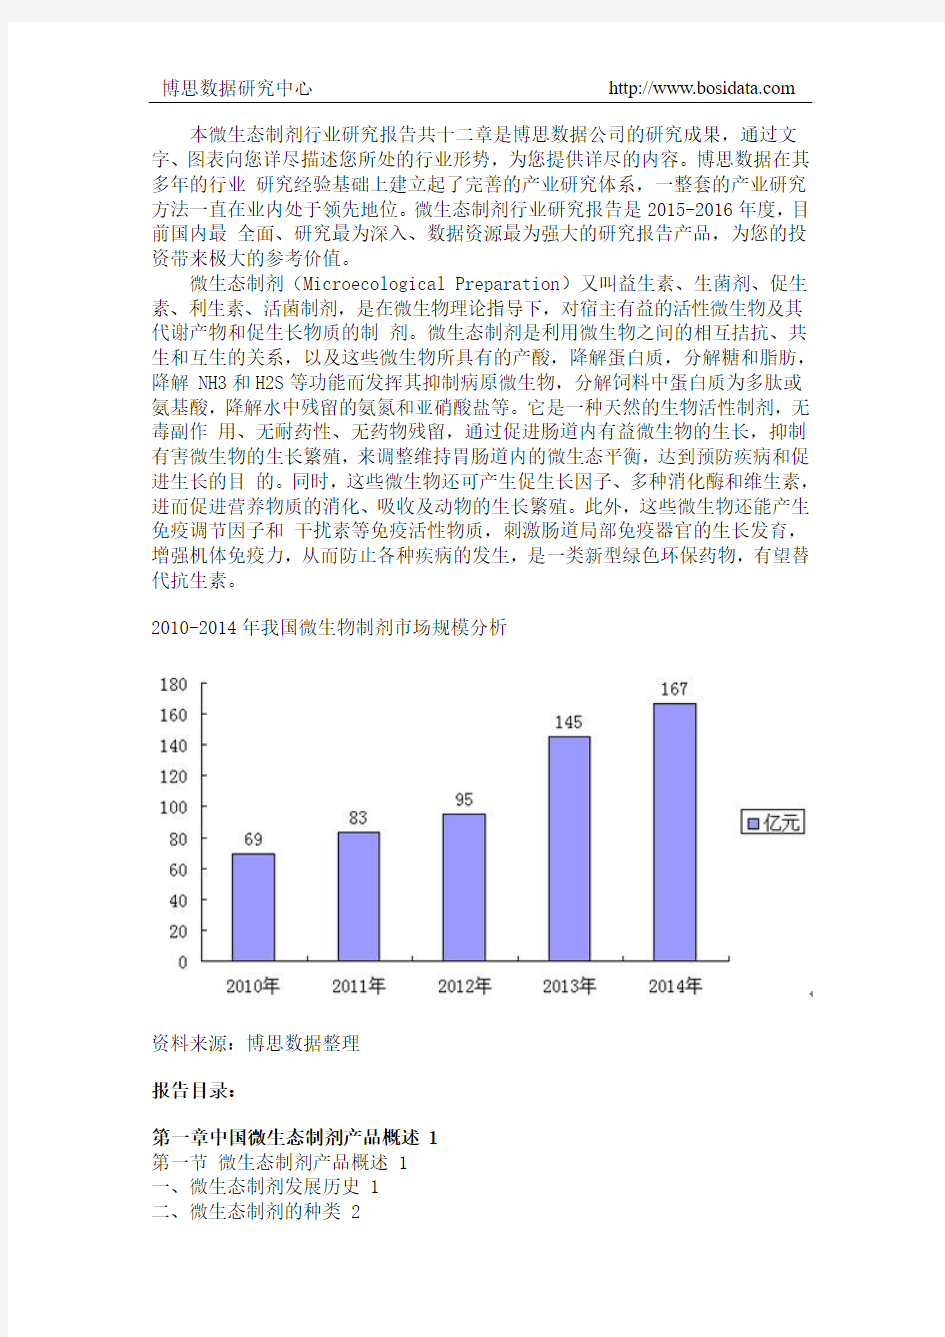 中国微生态制剂市场监测及投资建议研究报告